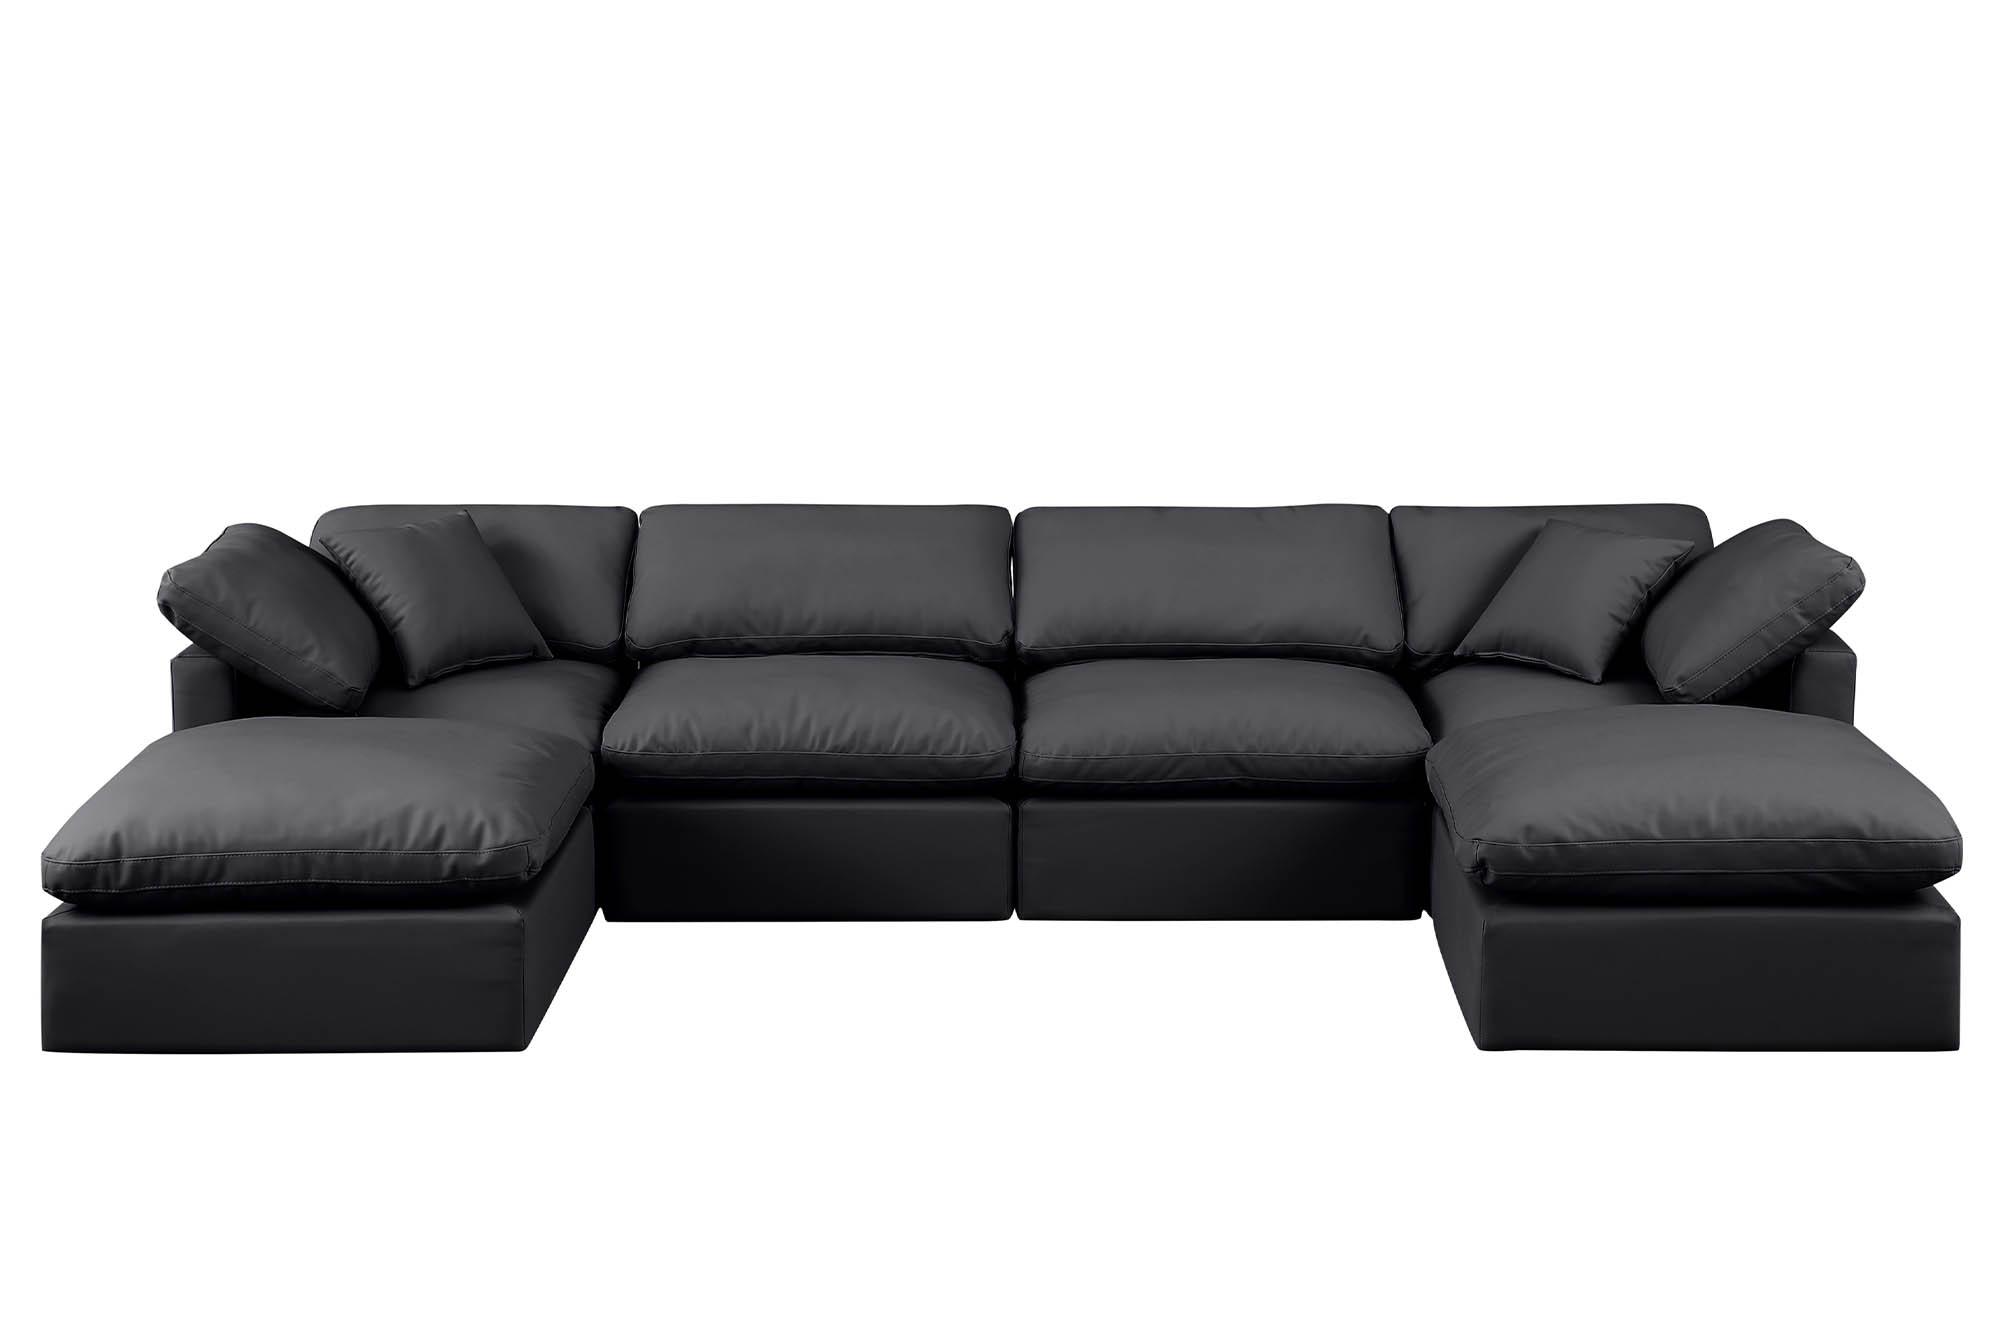 

    
Meridian Furniture INDULGE 146Black-Sec6B Modular Sectional Sofa Black 146Black-Sec6B
